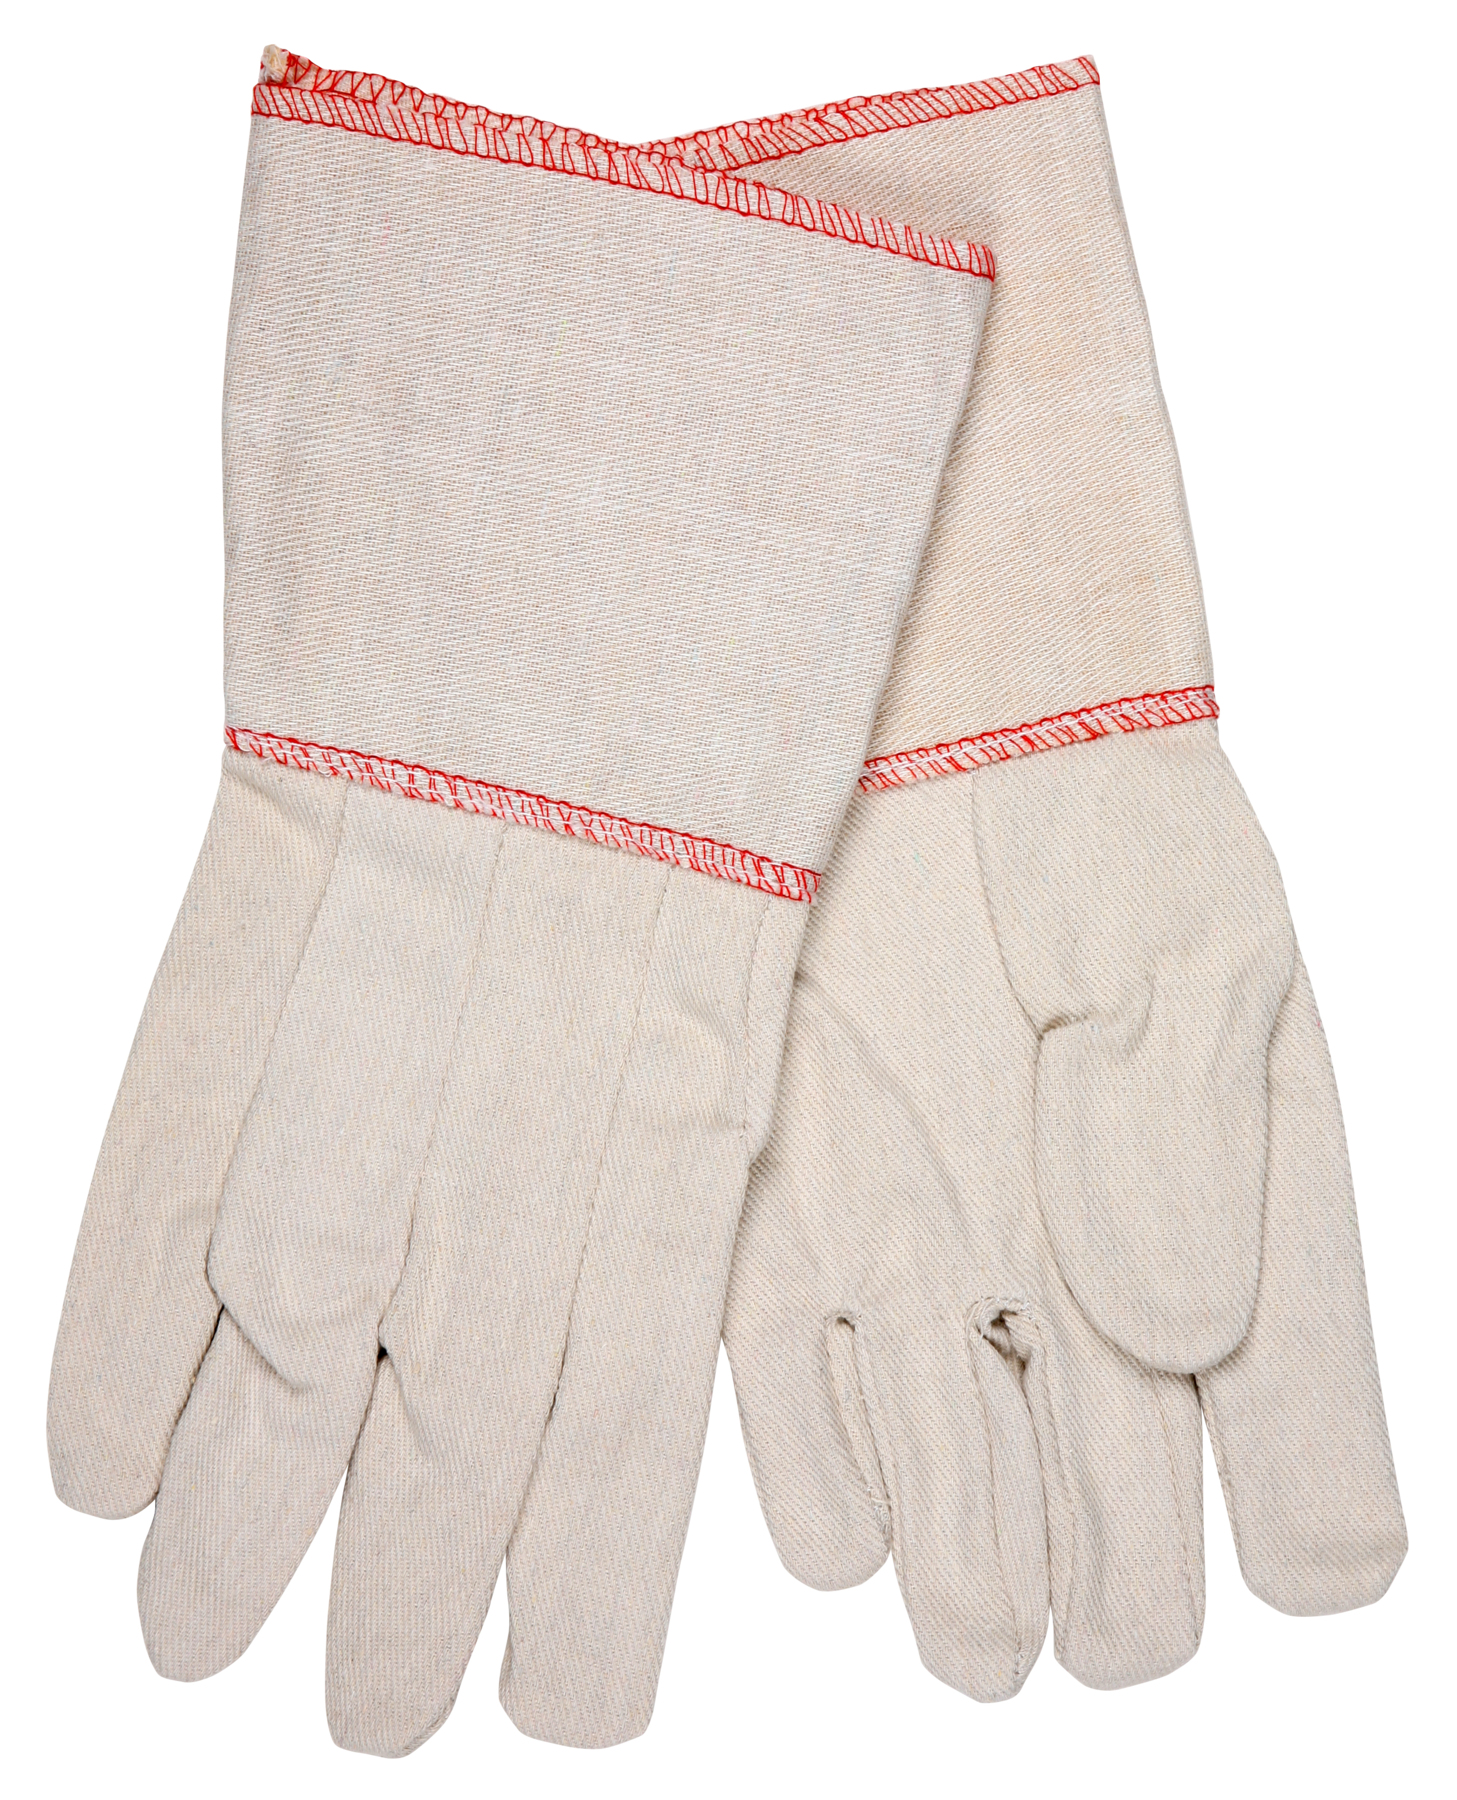 10 OZ COTTON CANVAS GLOVE GAUNTLET CUFF - Canvas Gloves